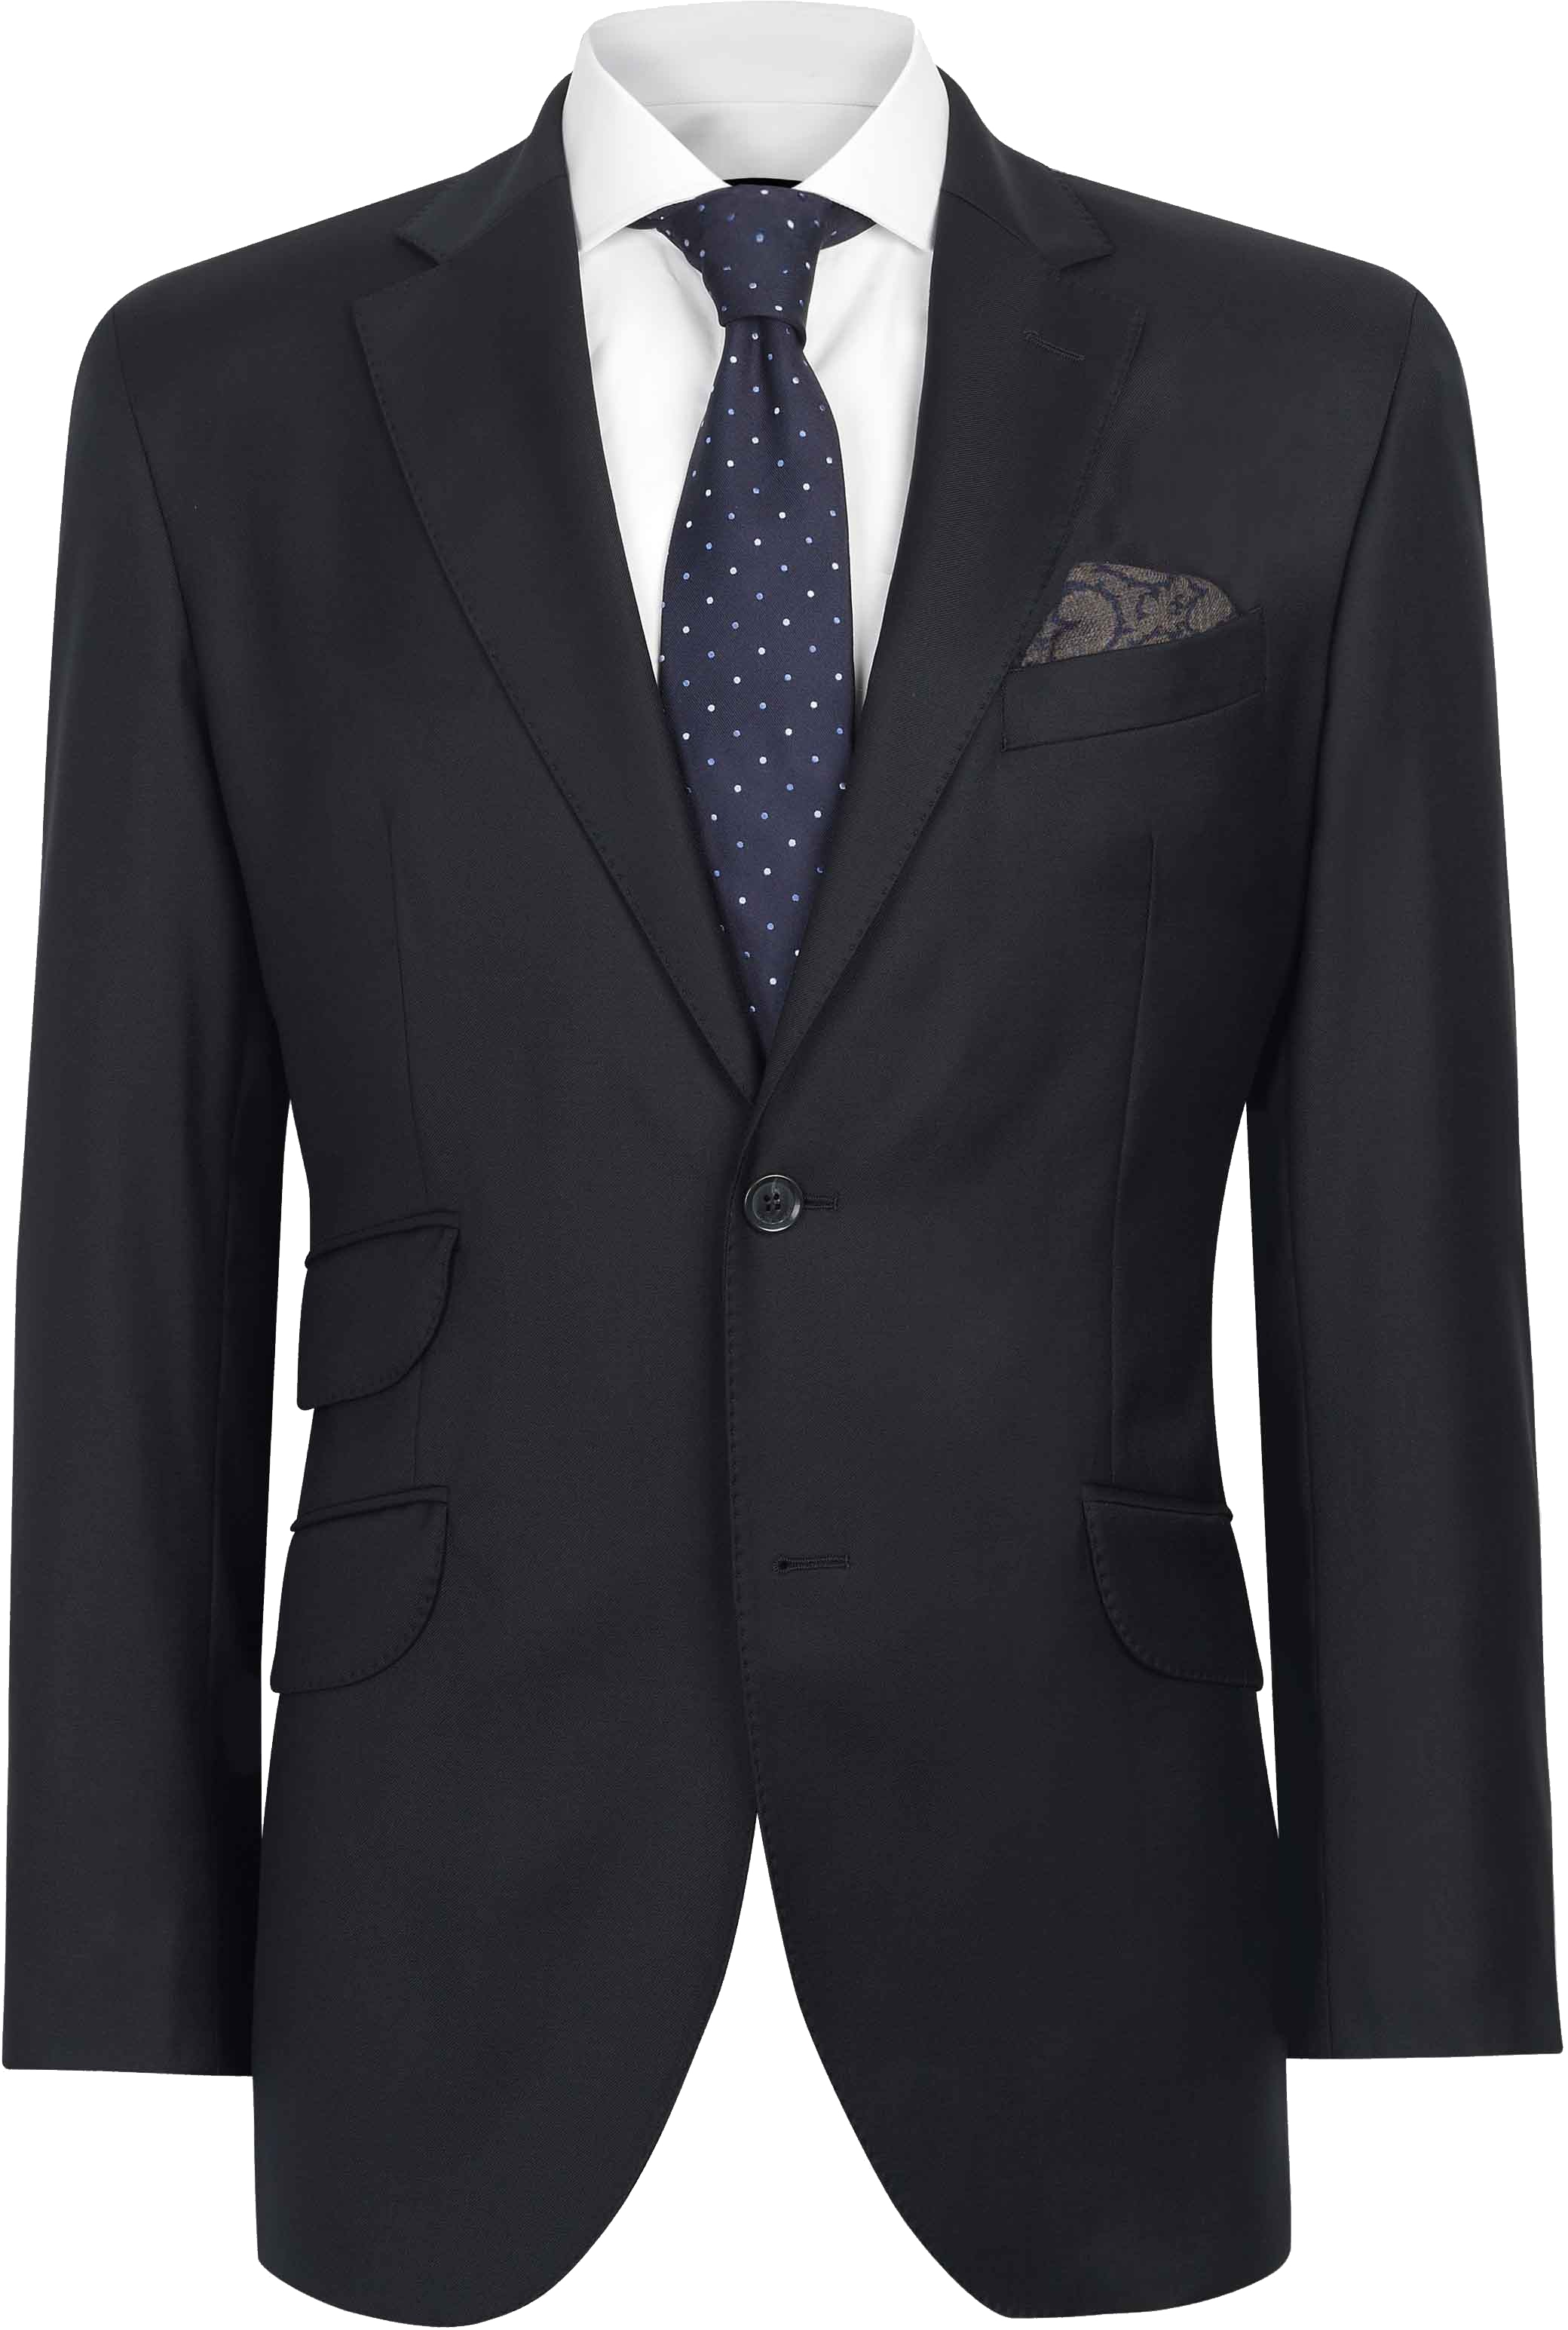 Suit Png Image - Carl Gross Suit Jacket (2080x3090), Png Download